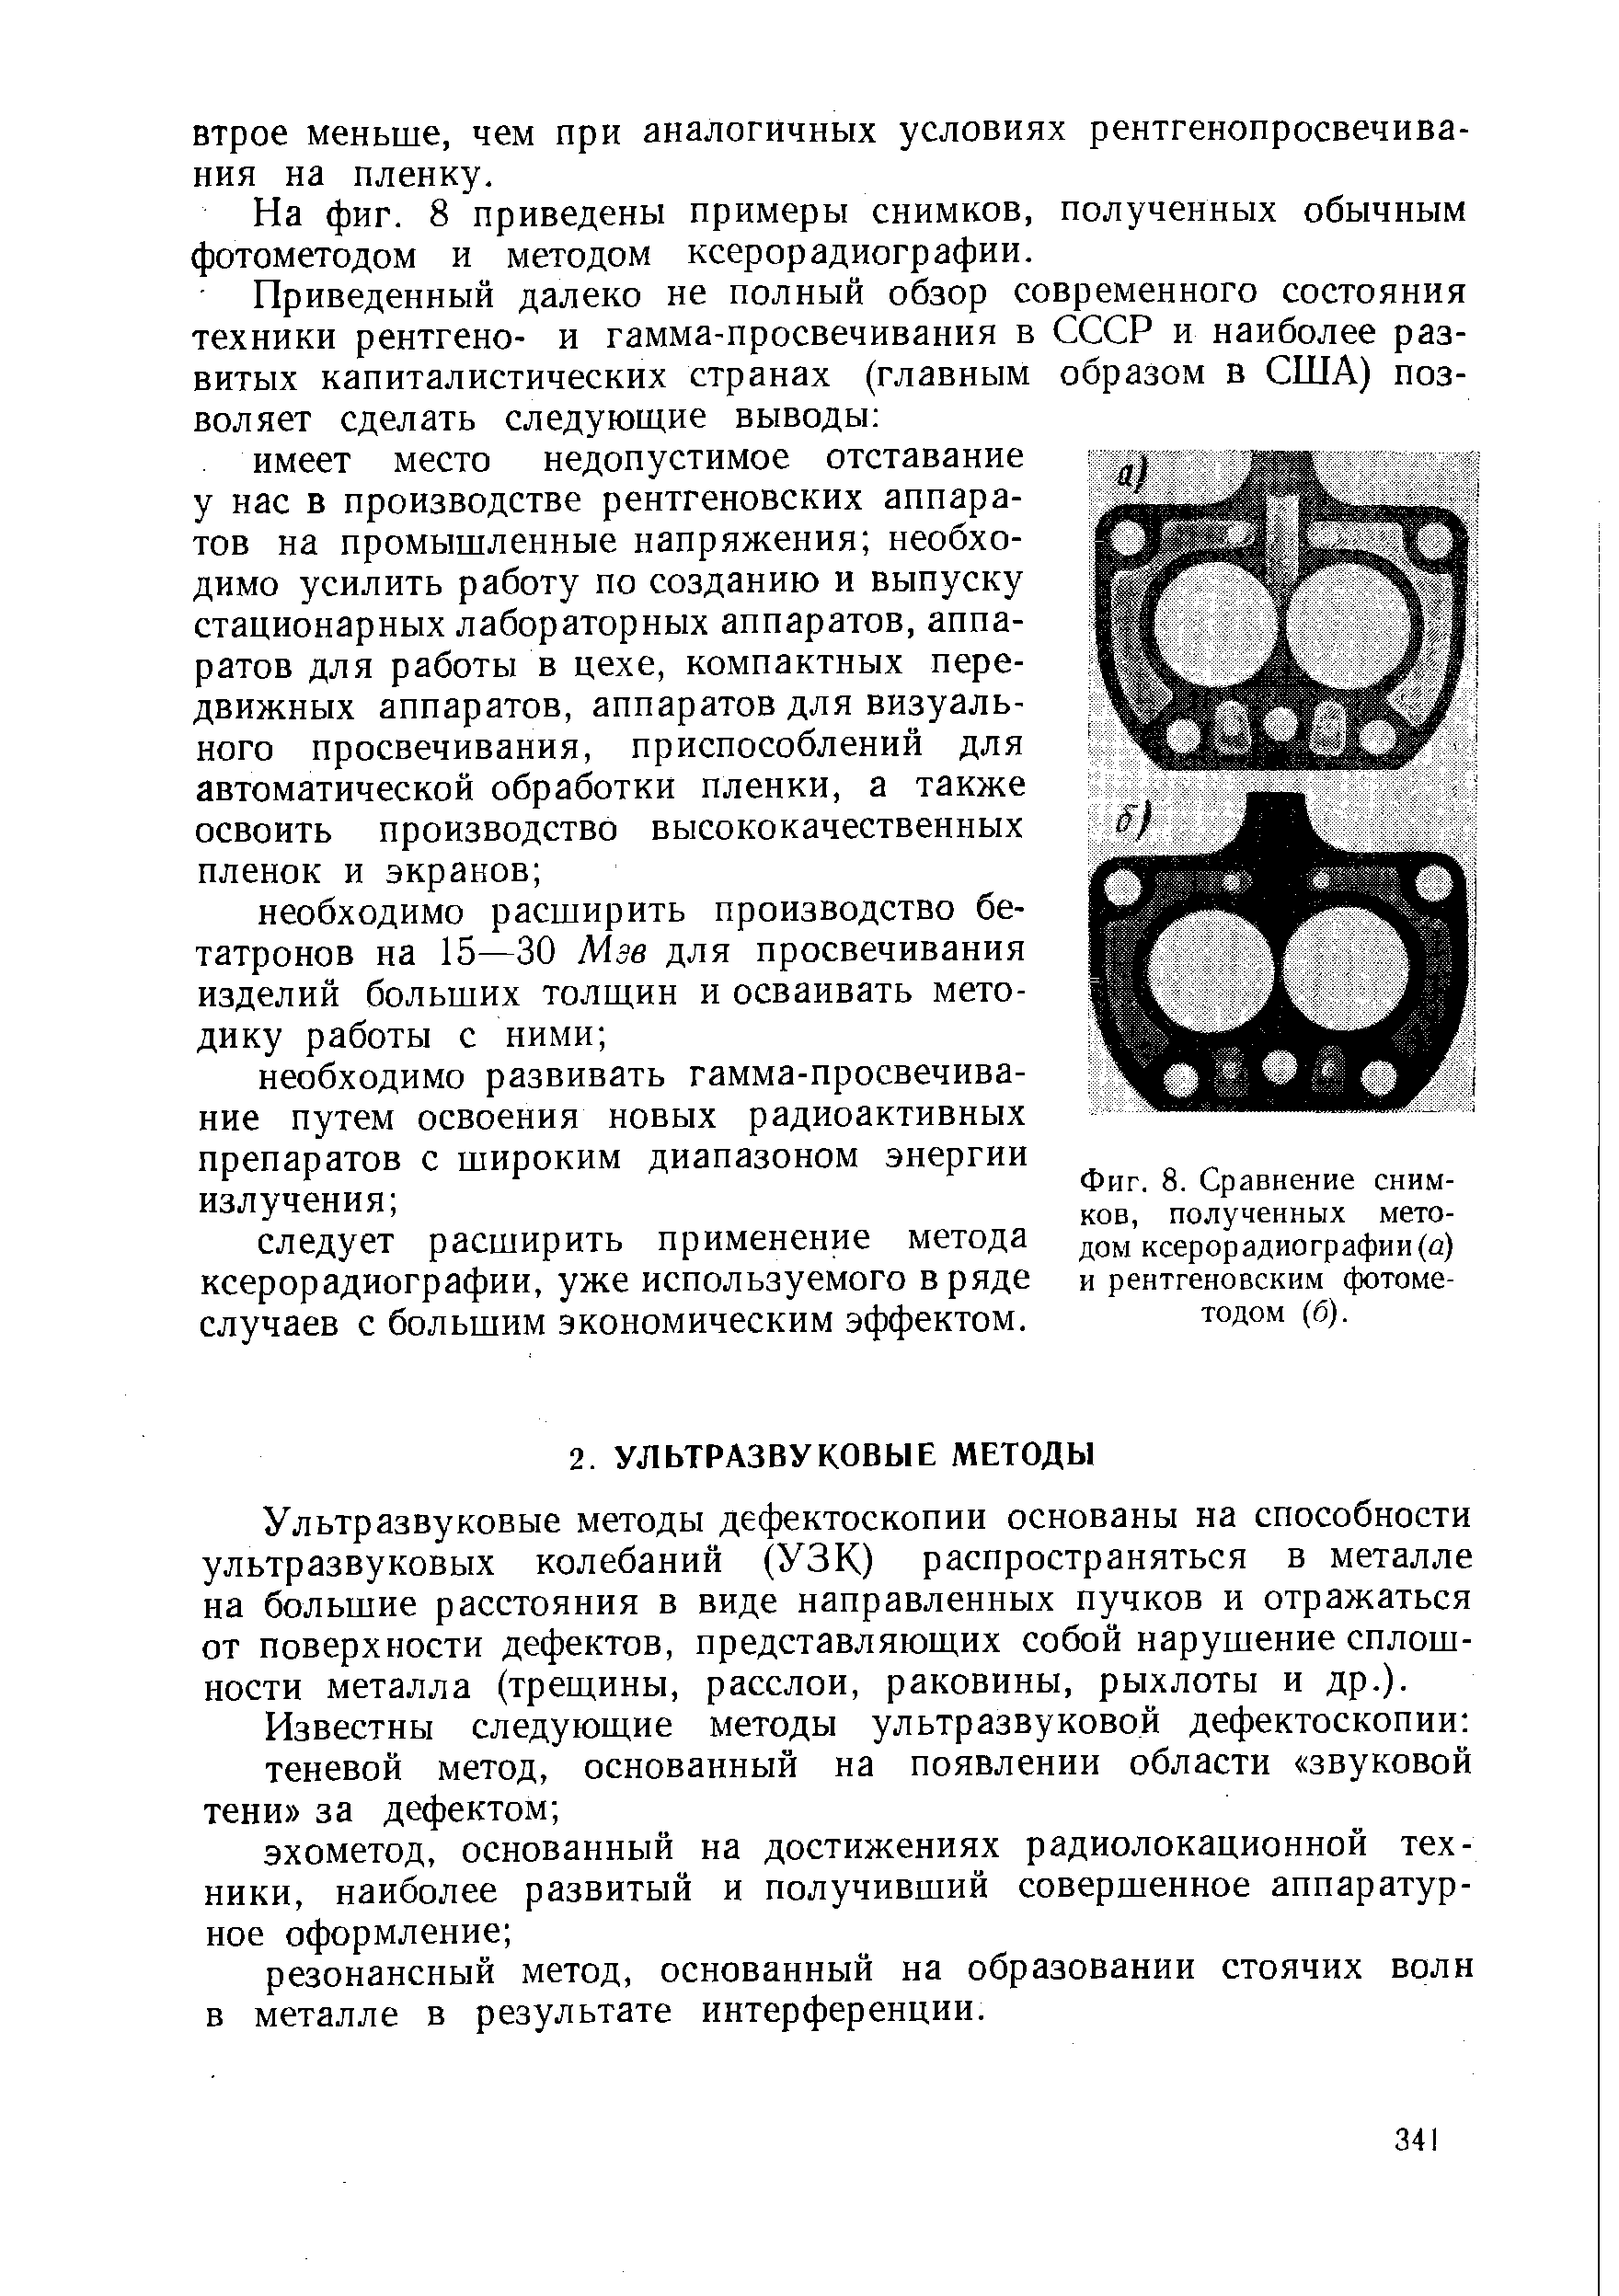 Фиг. 8. Сравнение снимков, полученных методом ксерорадиографии (а) и рентгеновским фотометодом (б).
